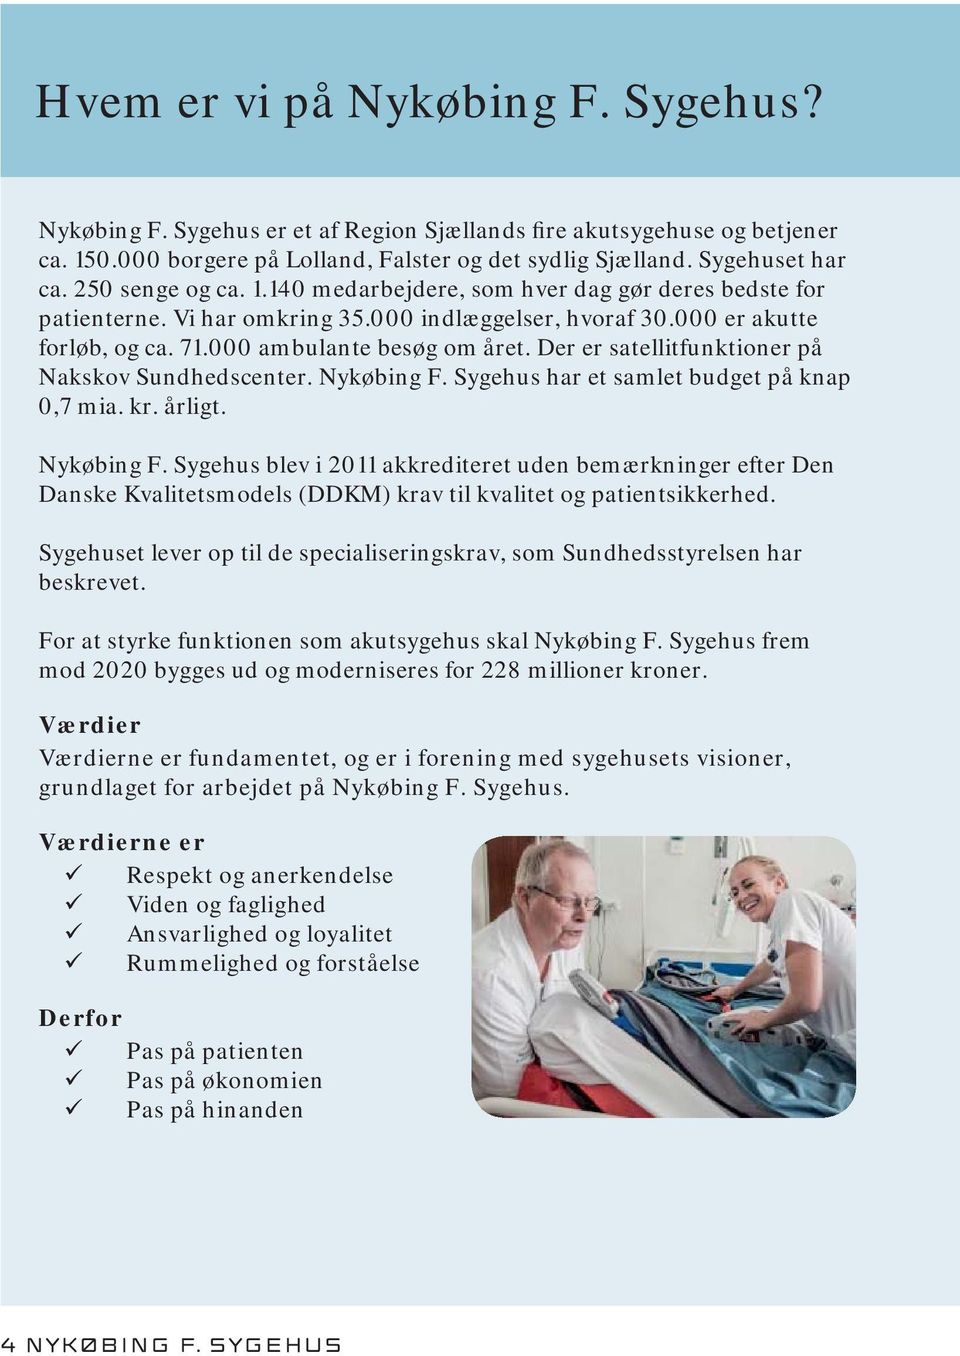 Der er satellitfunktioner på Nakskov Sundhedscenter. Nykøbing F. Sygehus har et samlet budget på knap 0,7 mia. kr. årligt. Nykøbing F. Sygehus blev i 2011 akkrediteret uden bemærkninger efter Den Danske Kvalitetsmodels (DDKM) krav til kvalitet og patientsikkerhed.